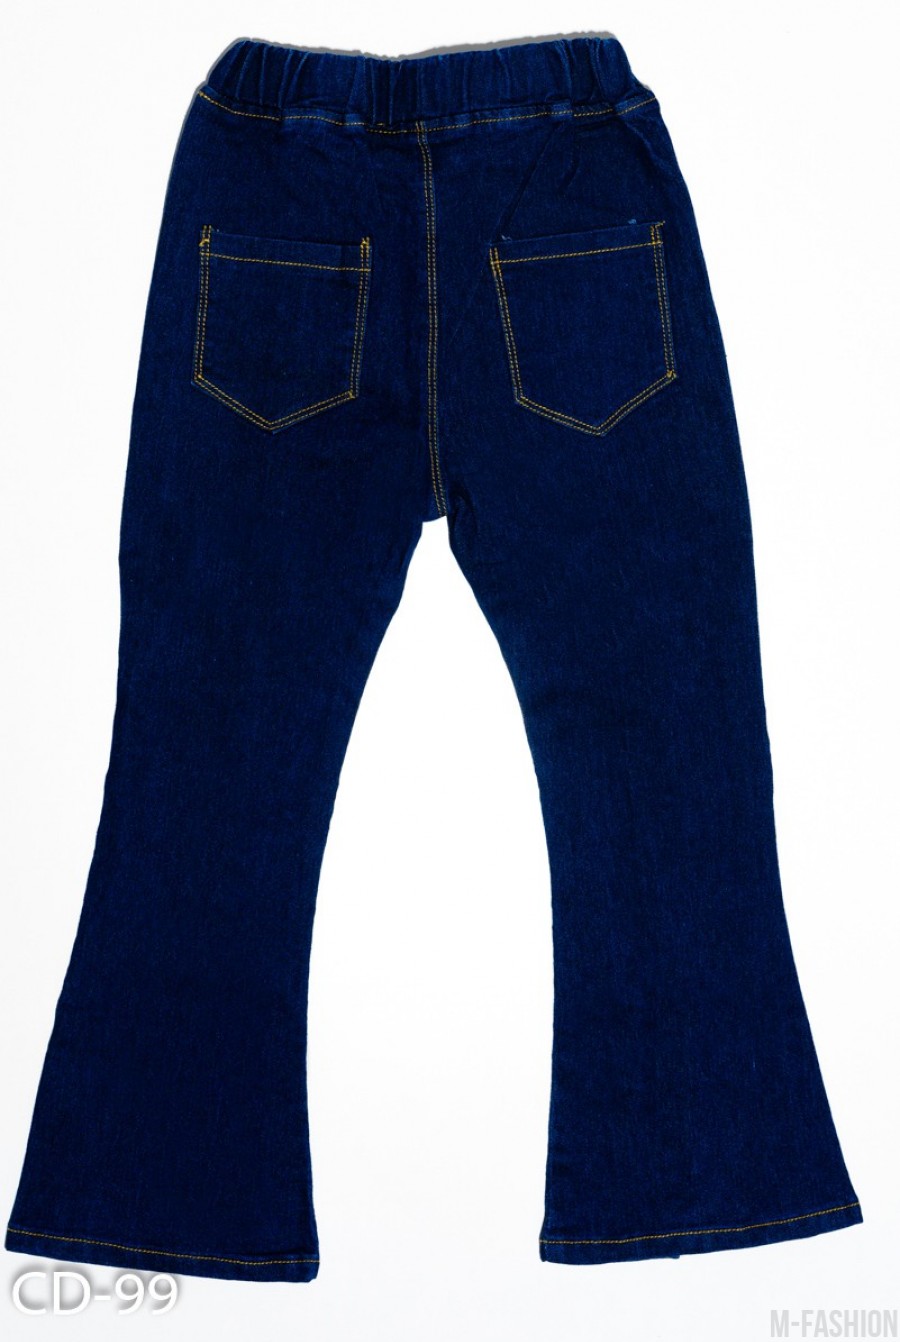 Синие джинсы модели клеш с клиньями и бусинами- Фото 2